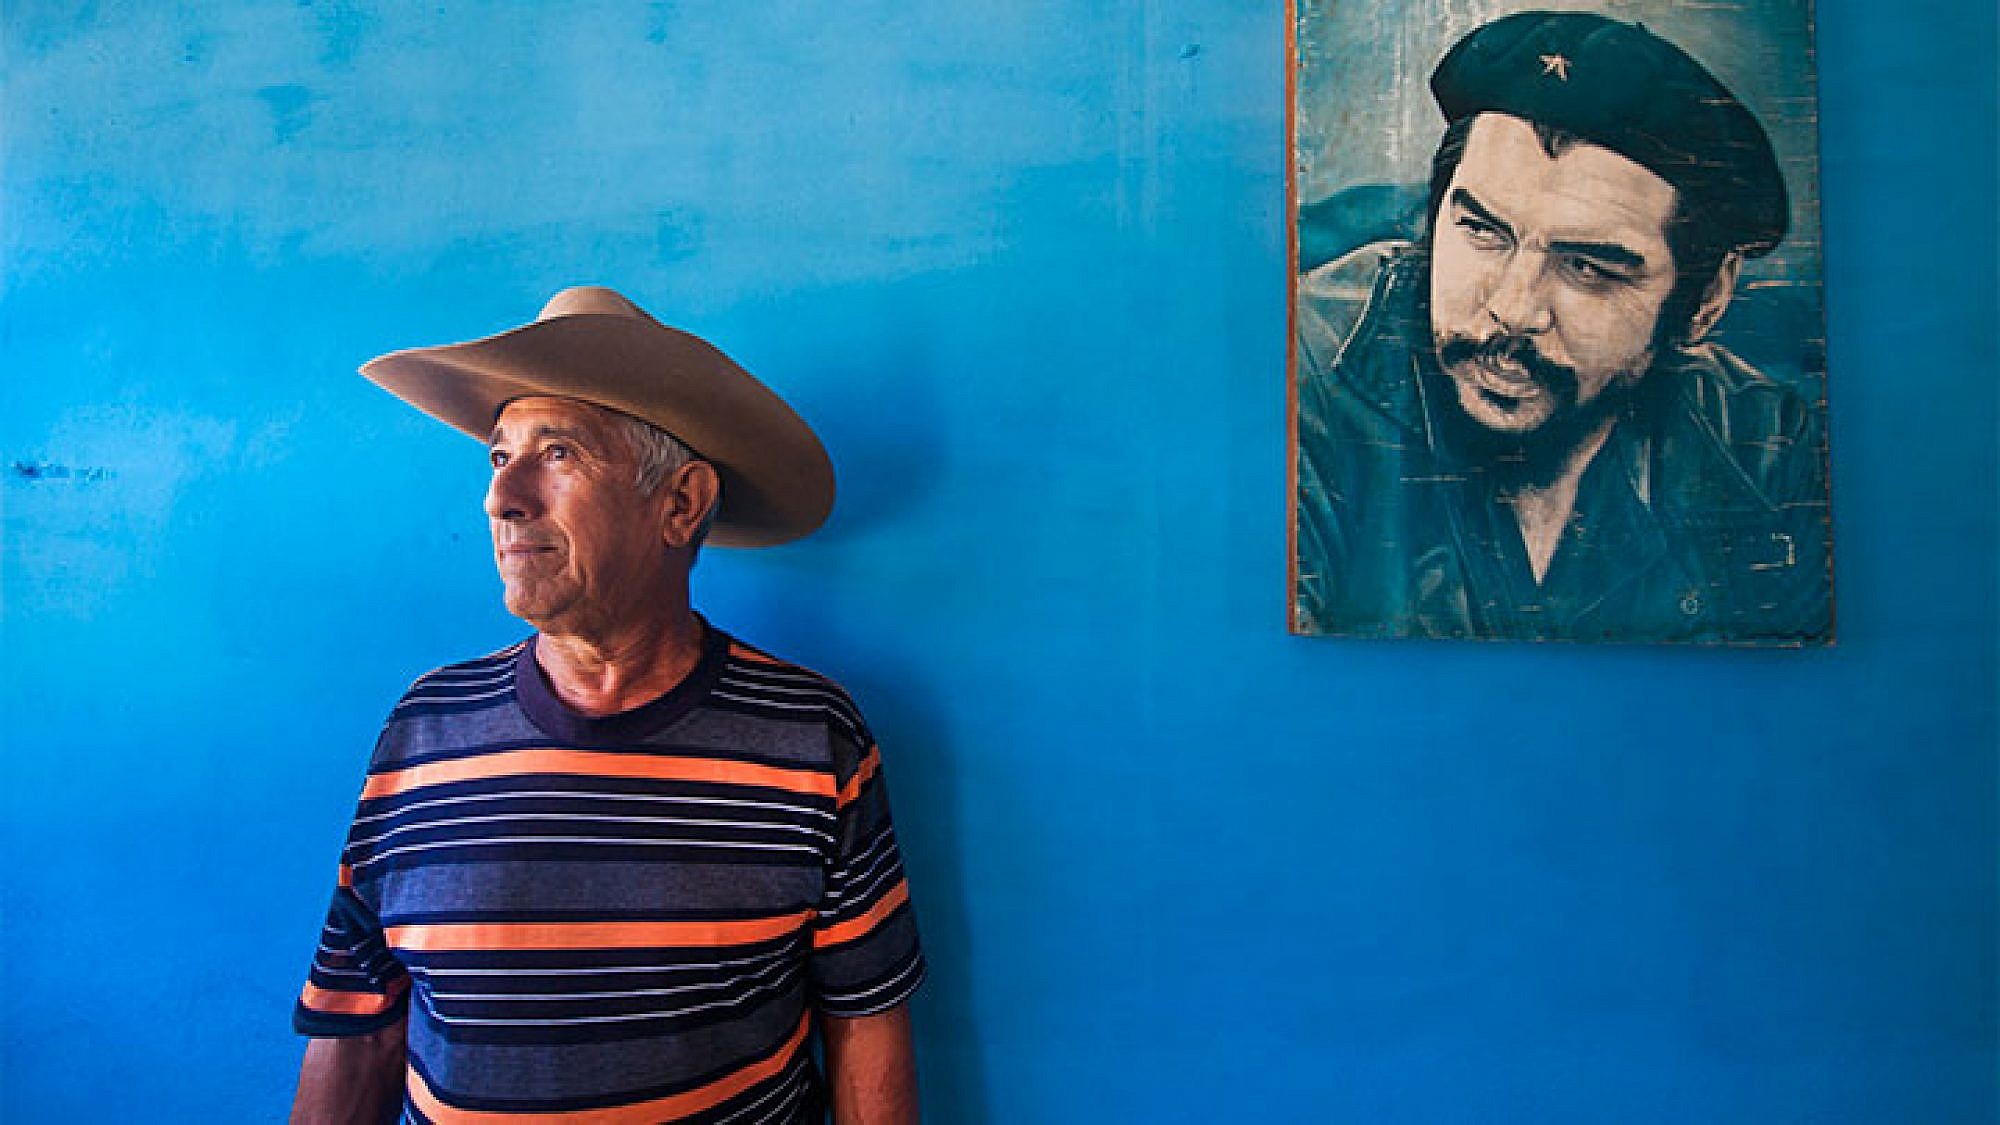 ארנסטו צ'ה גווארה, שותפו של פידל קסטרו למהפכה שפרצה ב-1956, הוא דמות נערצת בפני עצמה. צילום: לירון שמעוני